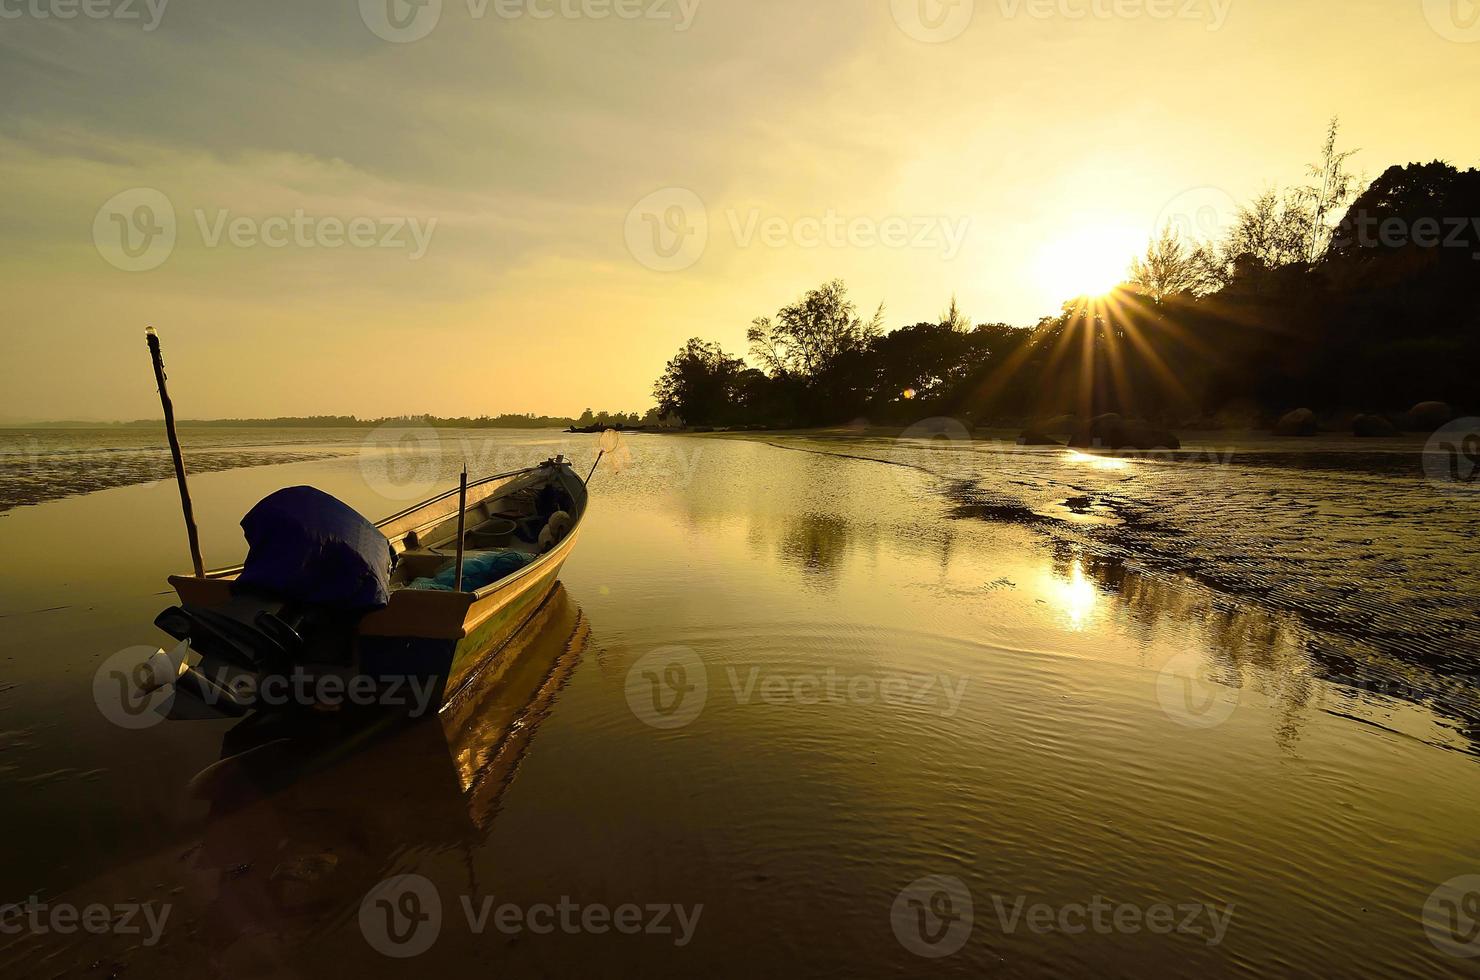 Boot in Strandnähe, wenn die Sonne untergeht foto